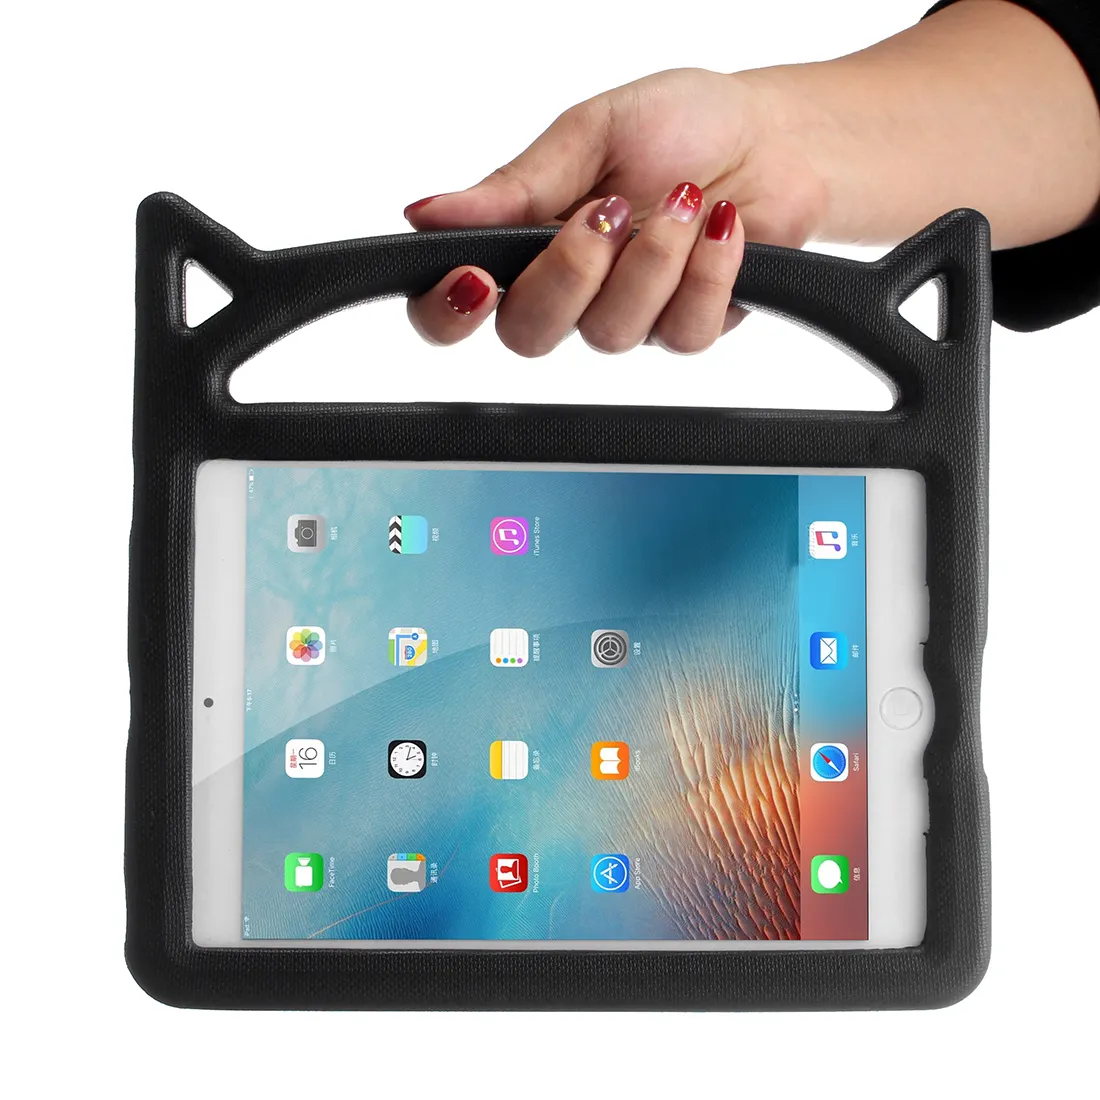 التخصيص لون بنيت في واقي للشاشة غطاء لوحي الثقيلة طفل إيفا رغوة حافظة لجهاز iPad الهواء 2 3 4 9.7 10.5 10.9 بوصة